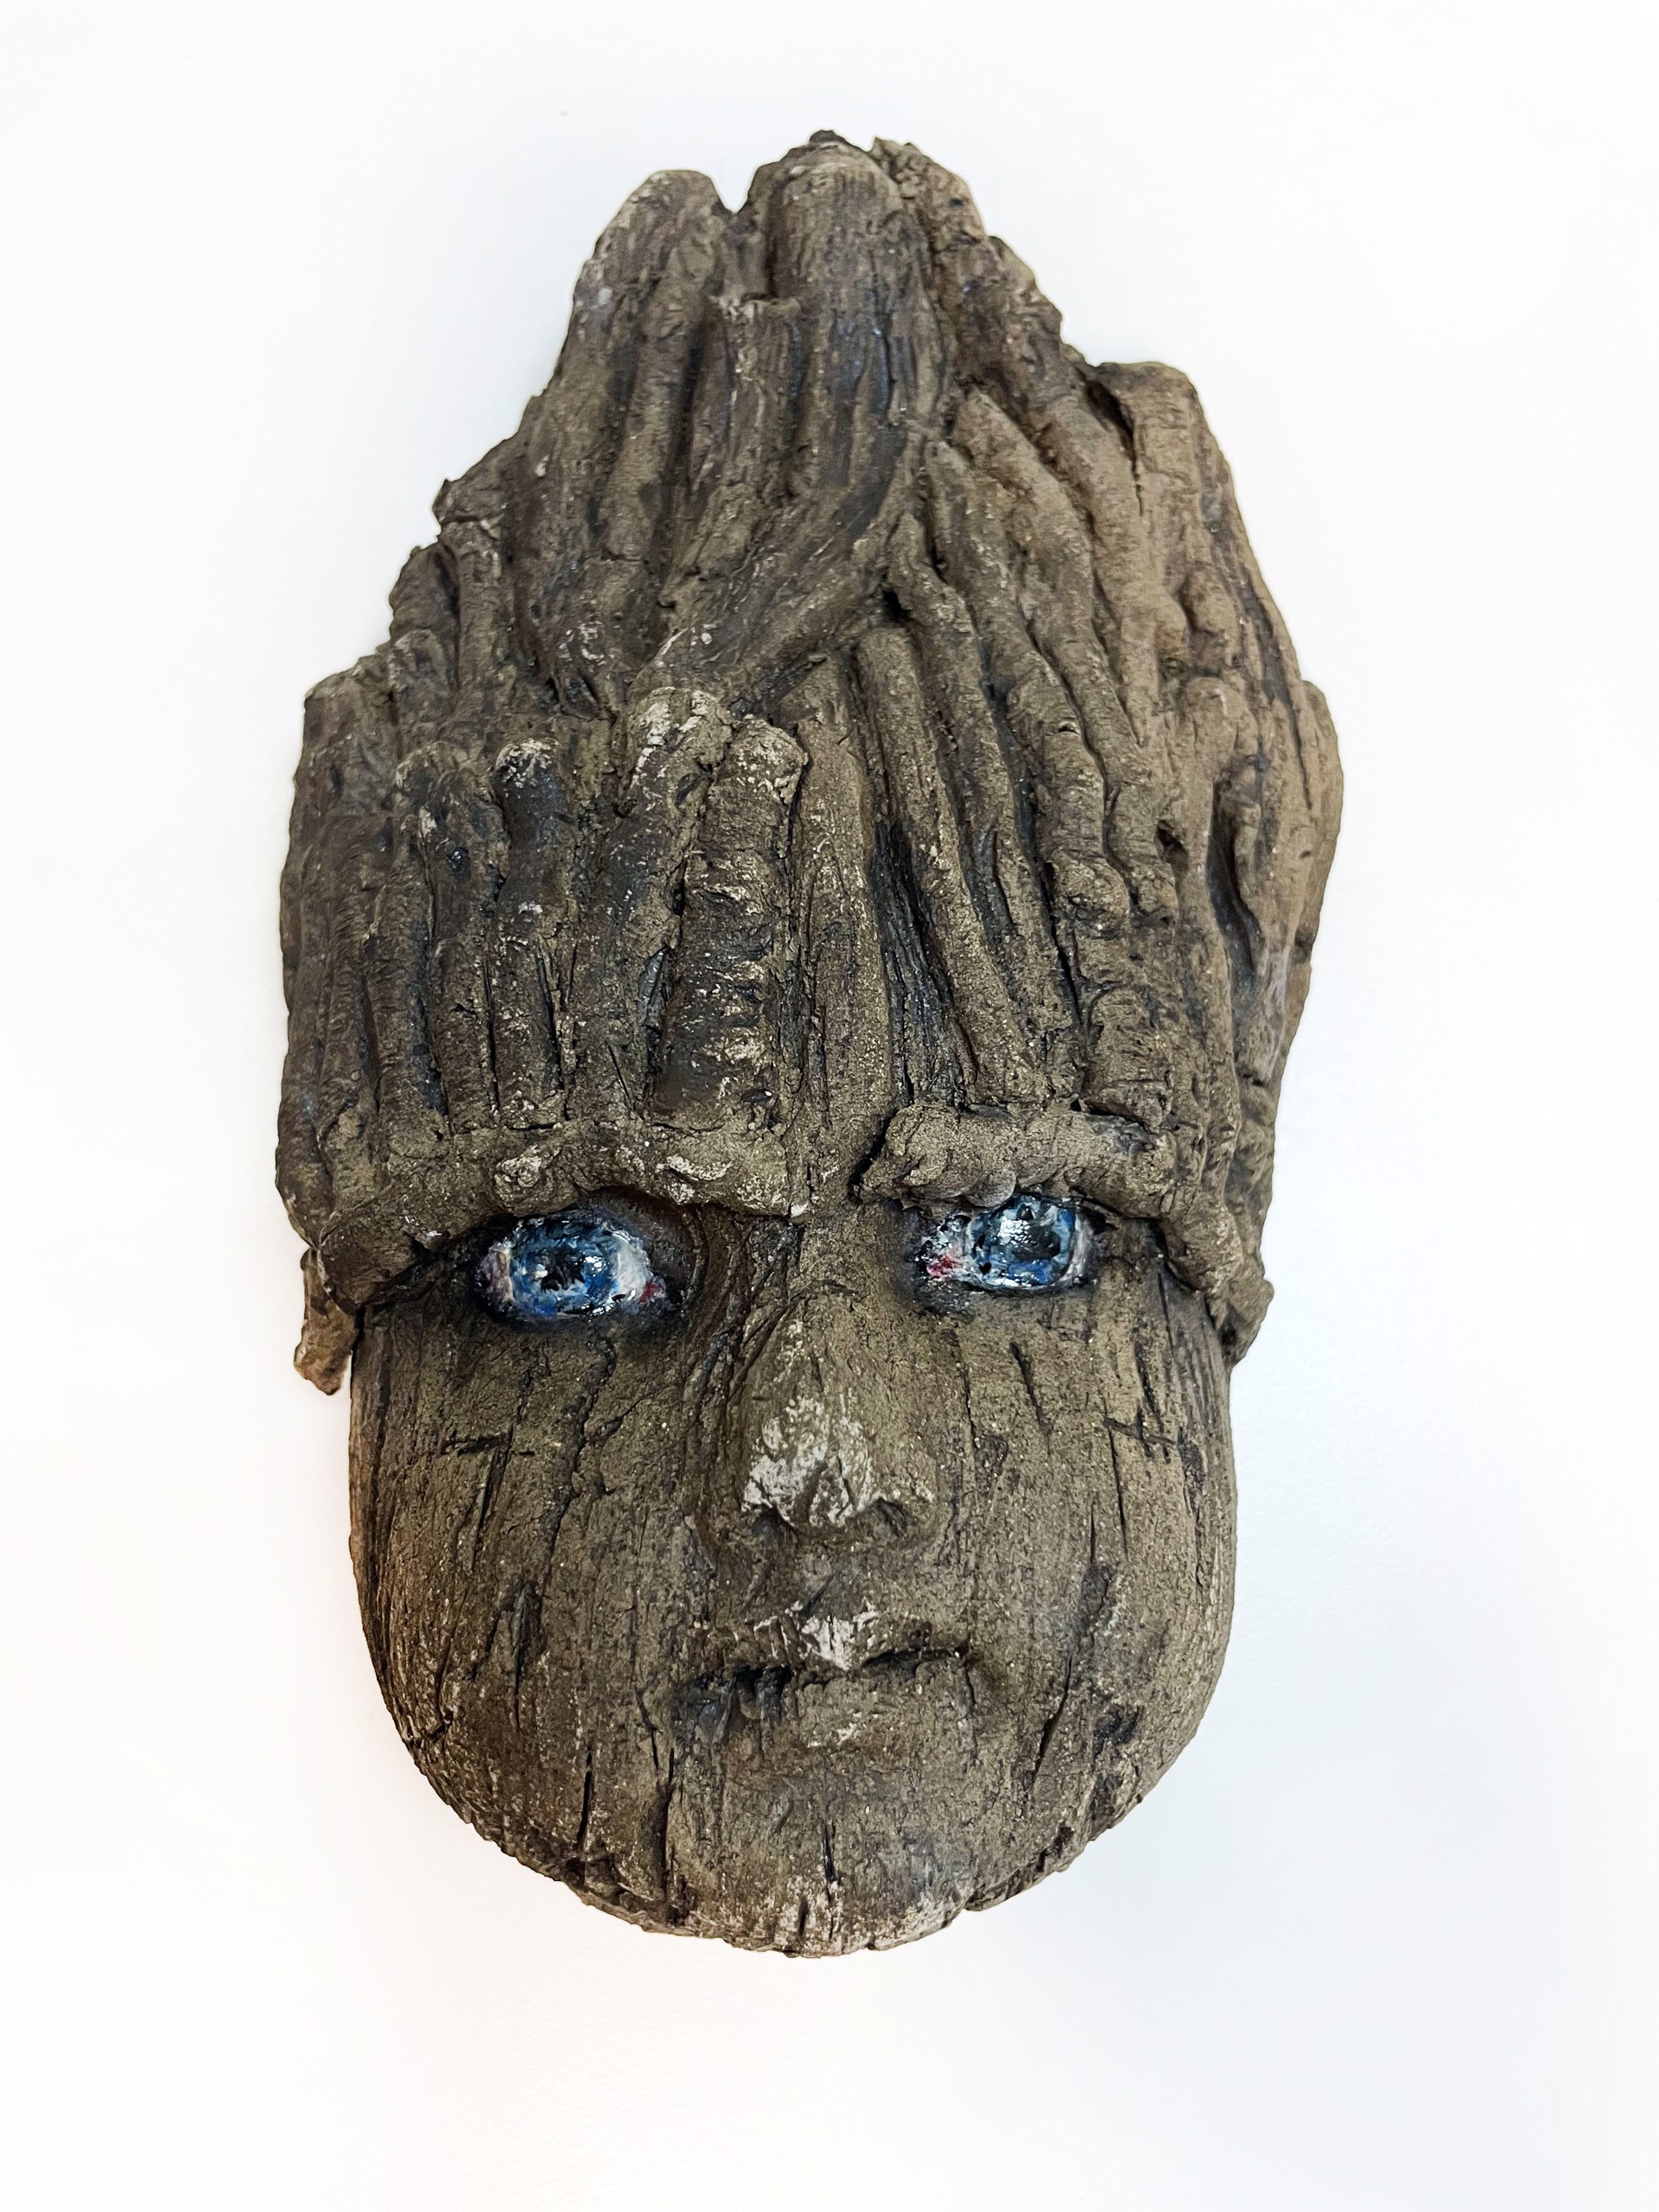 Wood Nymph II by Margaret Keelan